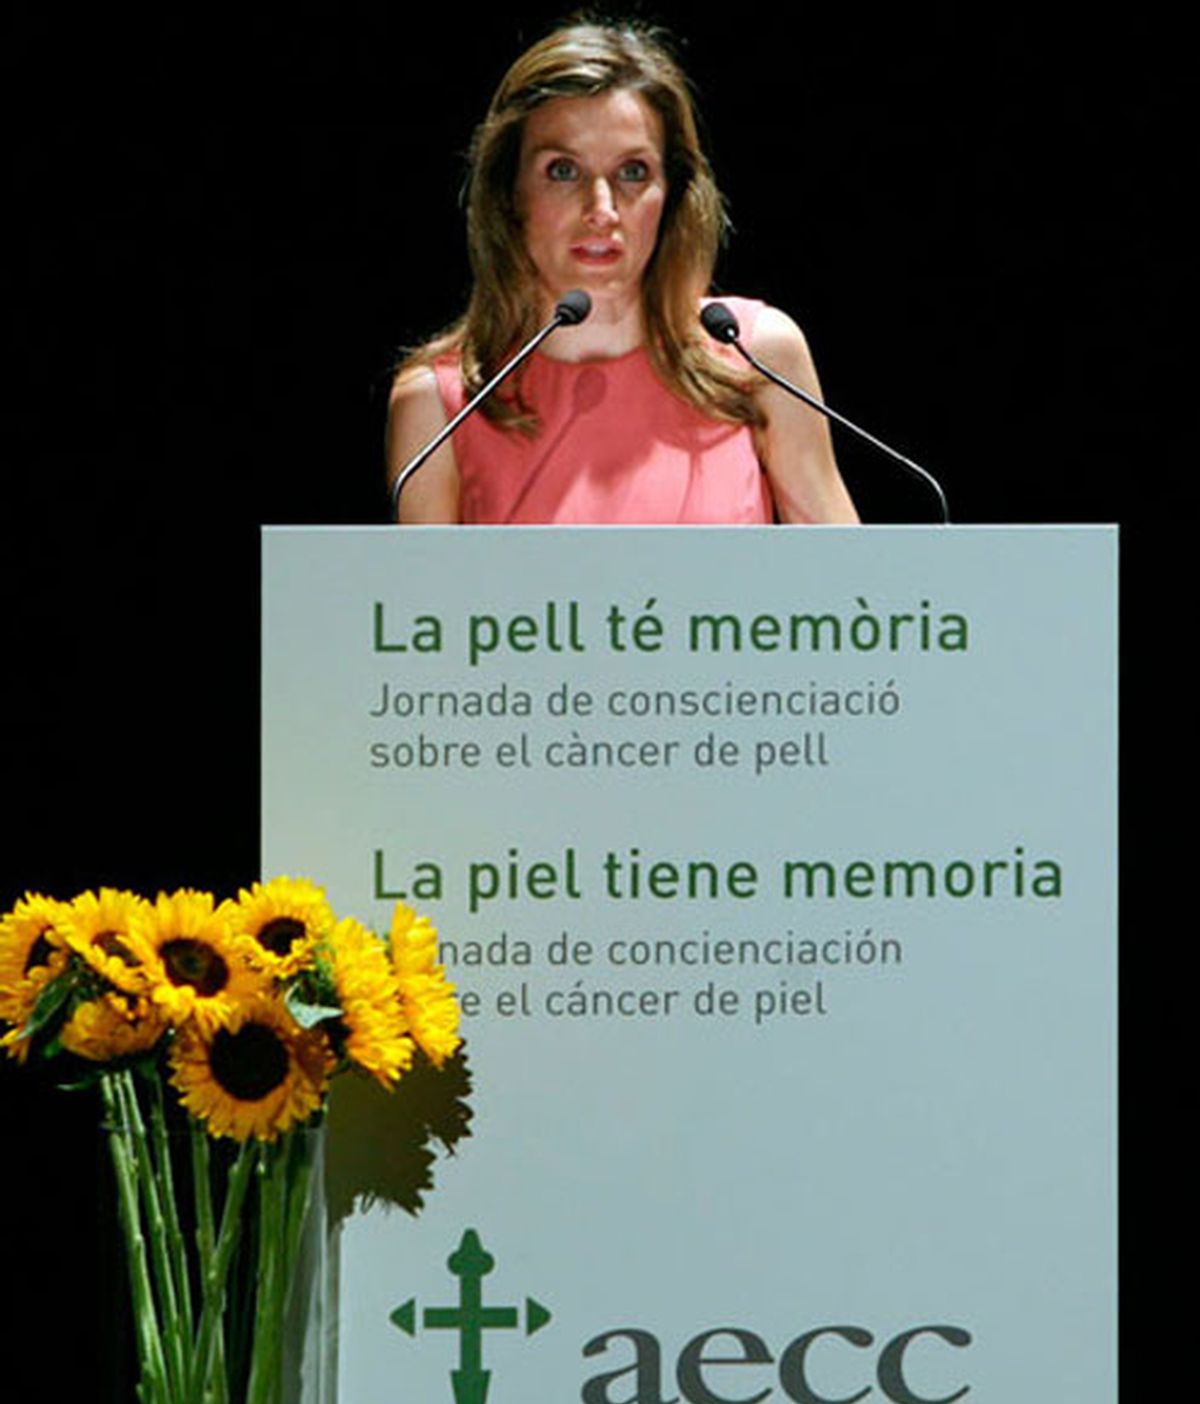 La princesa de Asturias y Girona Doña Letizia durante la inauguración de la jornada "La piel tiene memoria", organizada por la Asociación Española contra el Cáncer